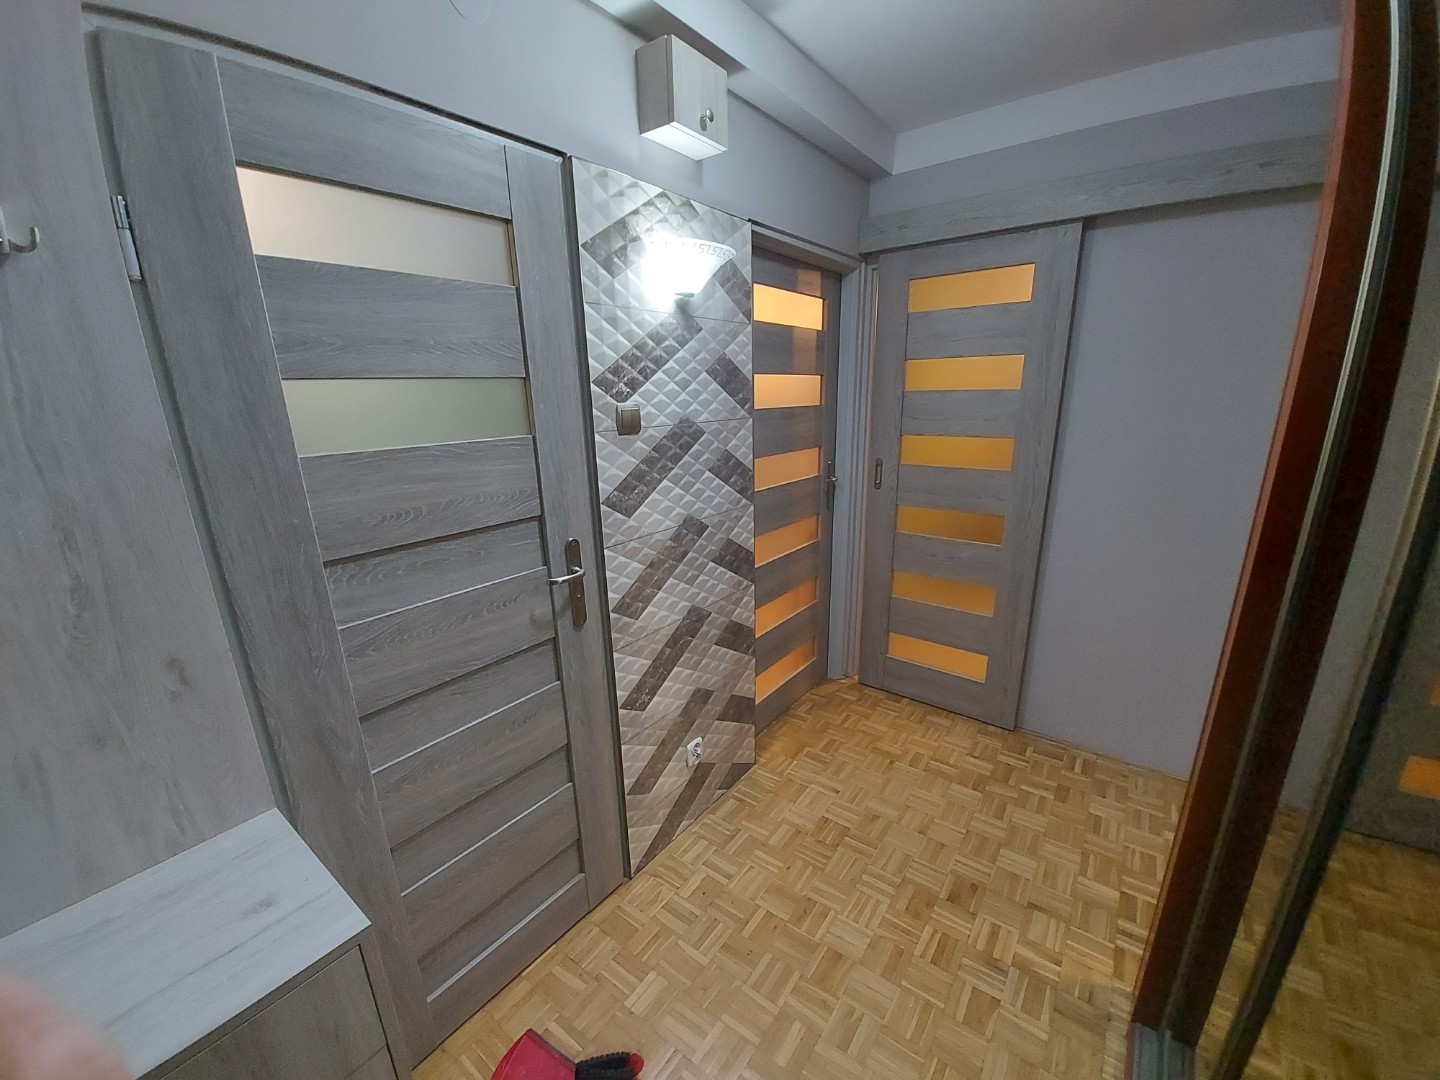 Przykład montażu jasnych drzwi domowych z matowymi oknami w paski